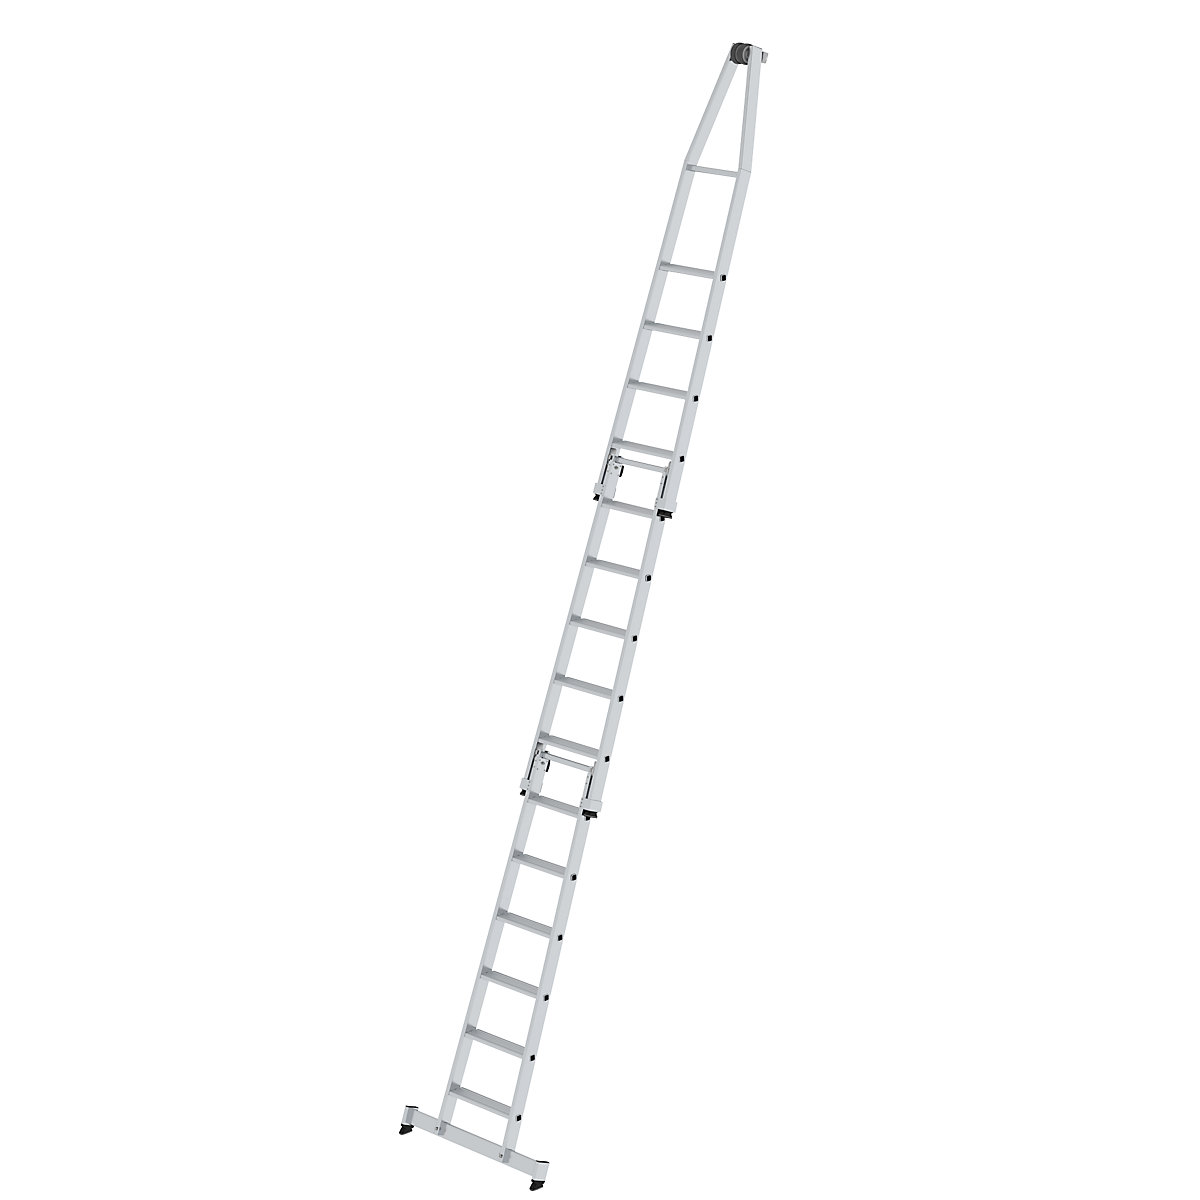 Rebrík so stupňami na čistenie okien – MUNK, štandard, 3-dielne, 15 stupňov-1